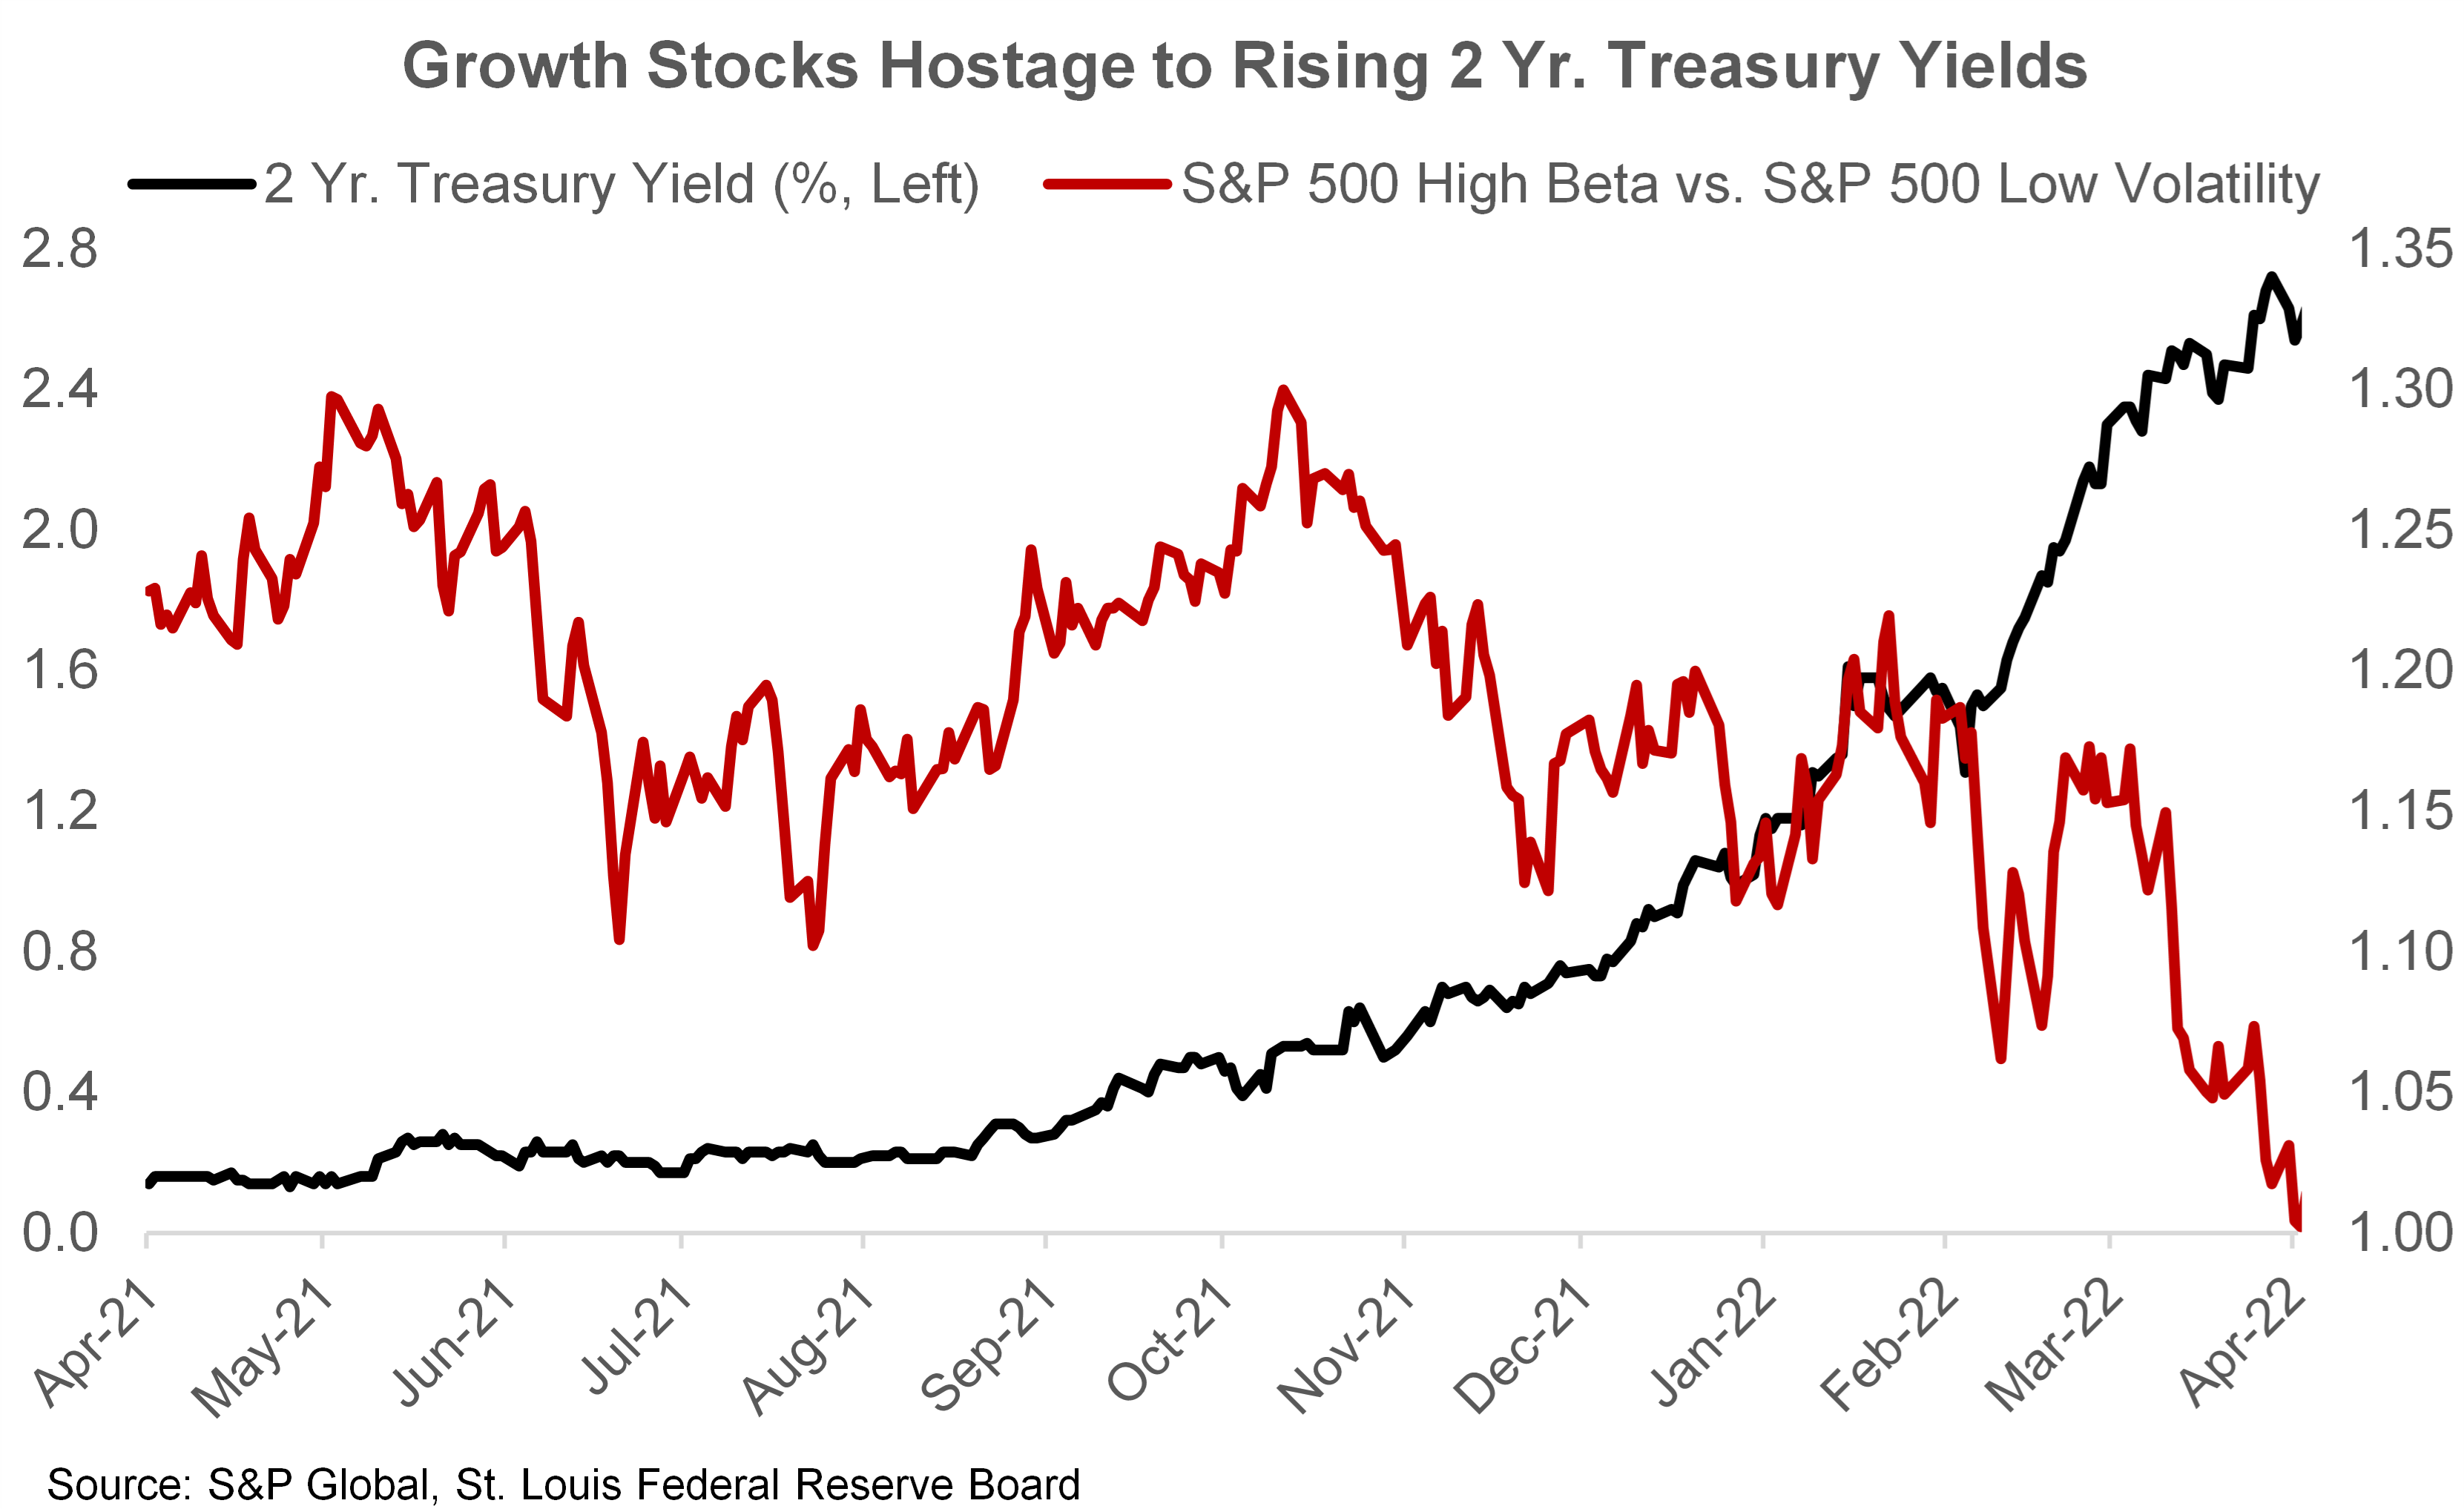 Growth Stocks Hostage to Rising 2 Yr. Treasury Yields